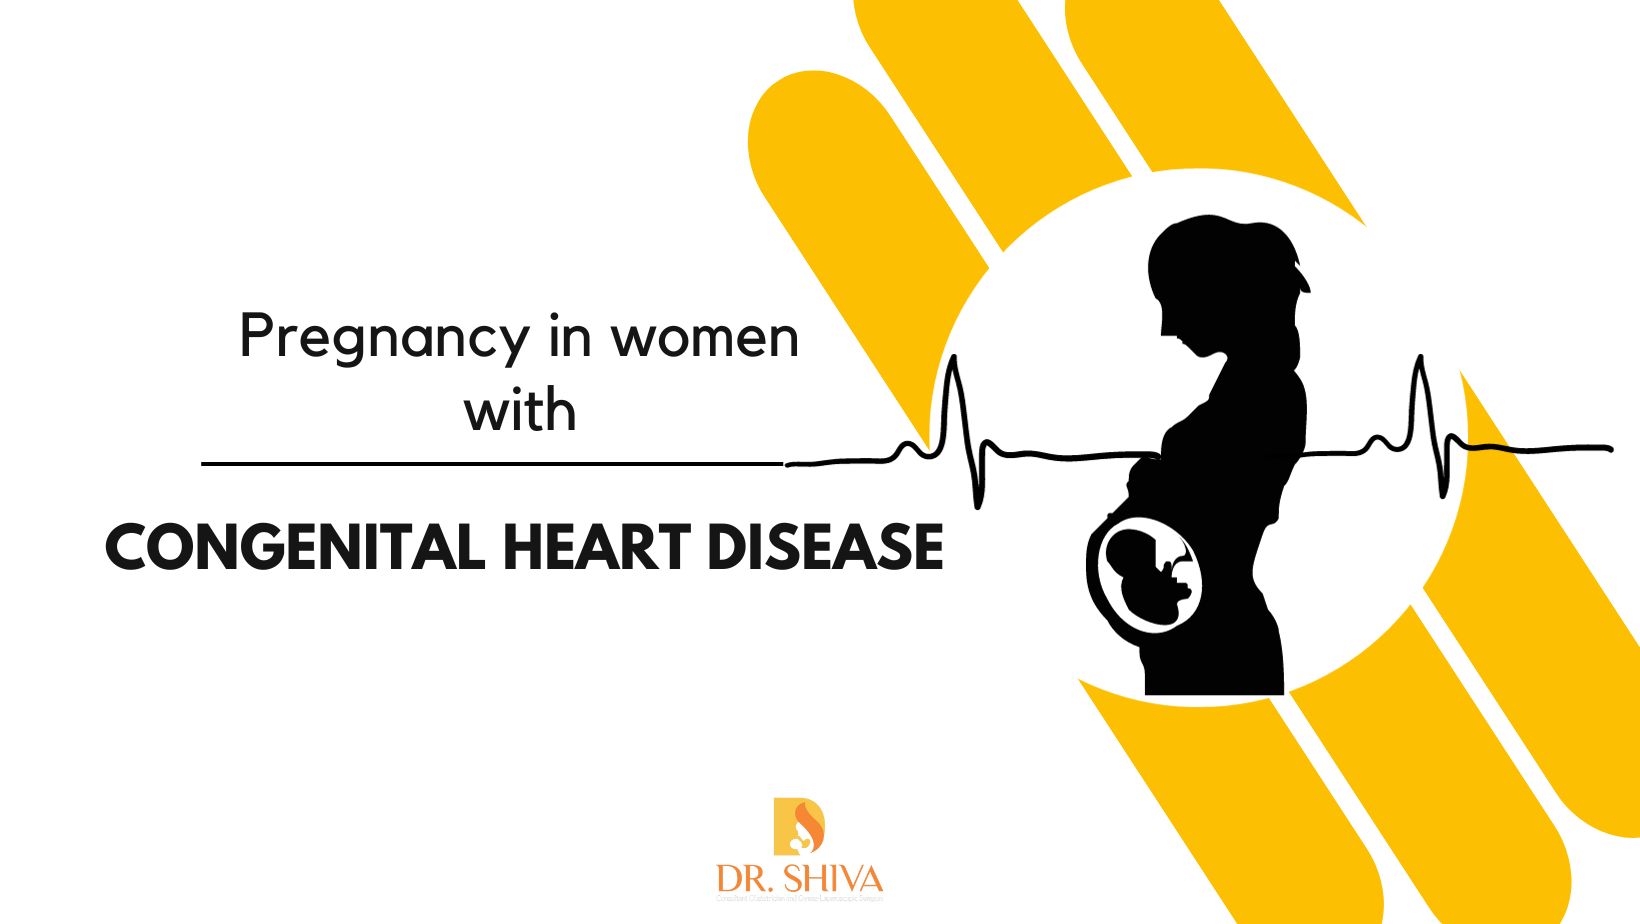 Pregnancy in women with Congenital Heart Disease (CHD)